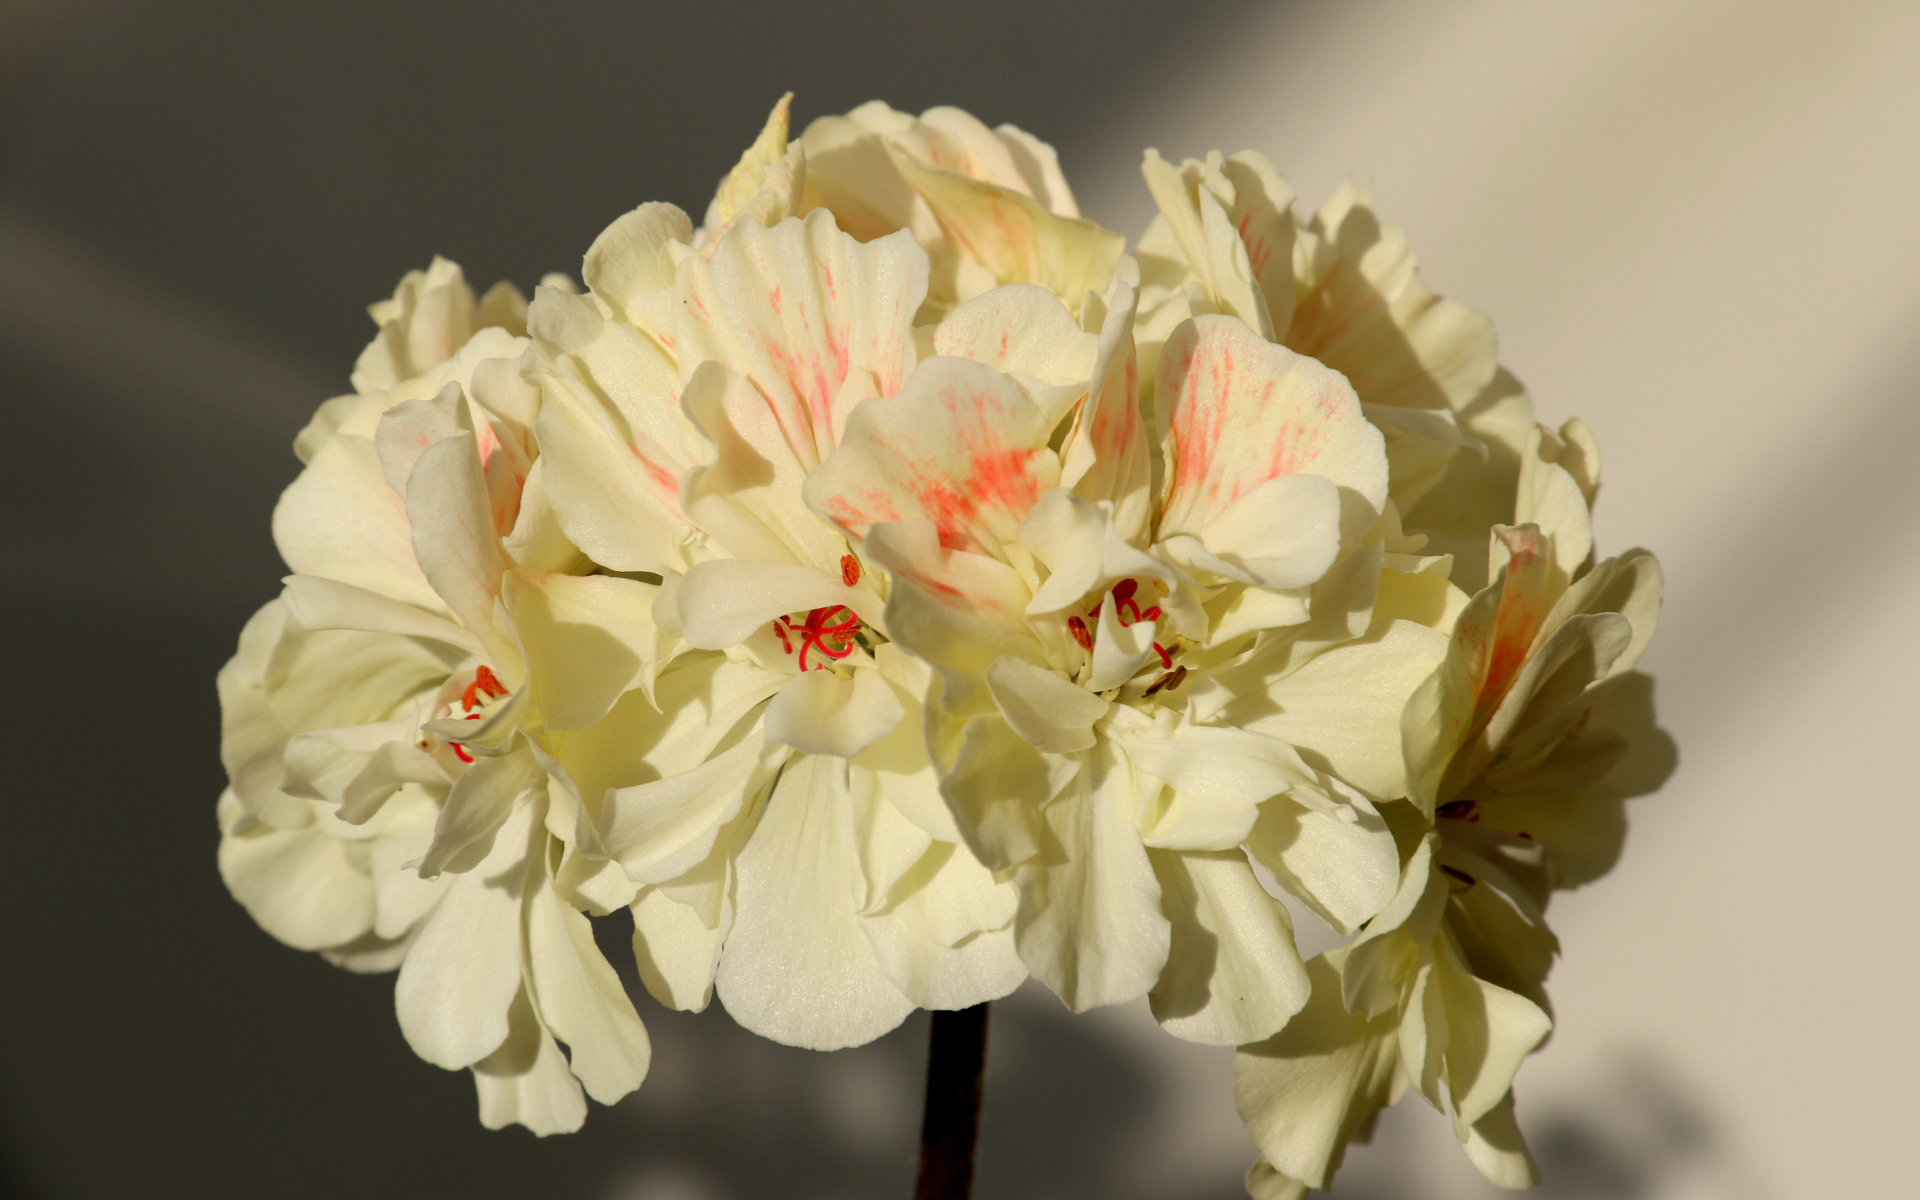 White Pelargonium flowers close up